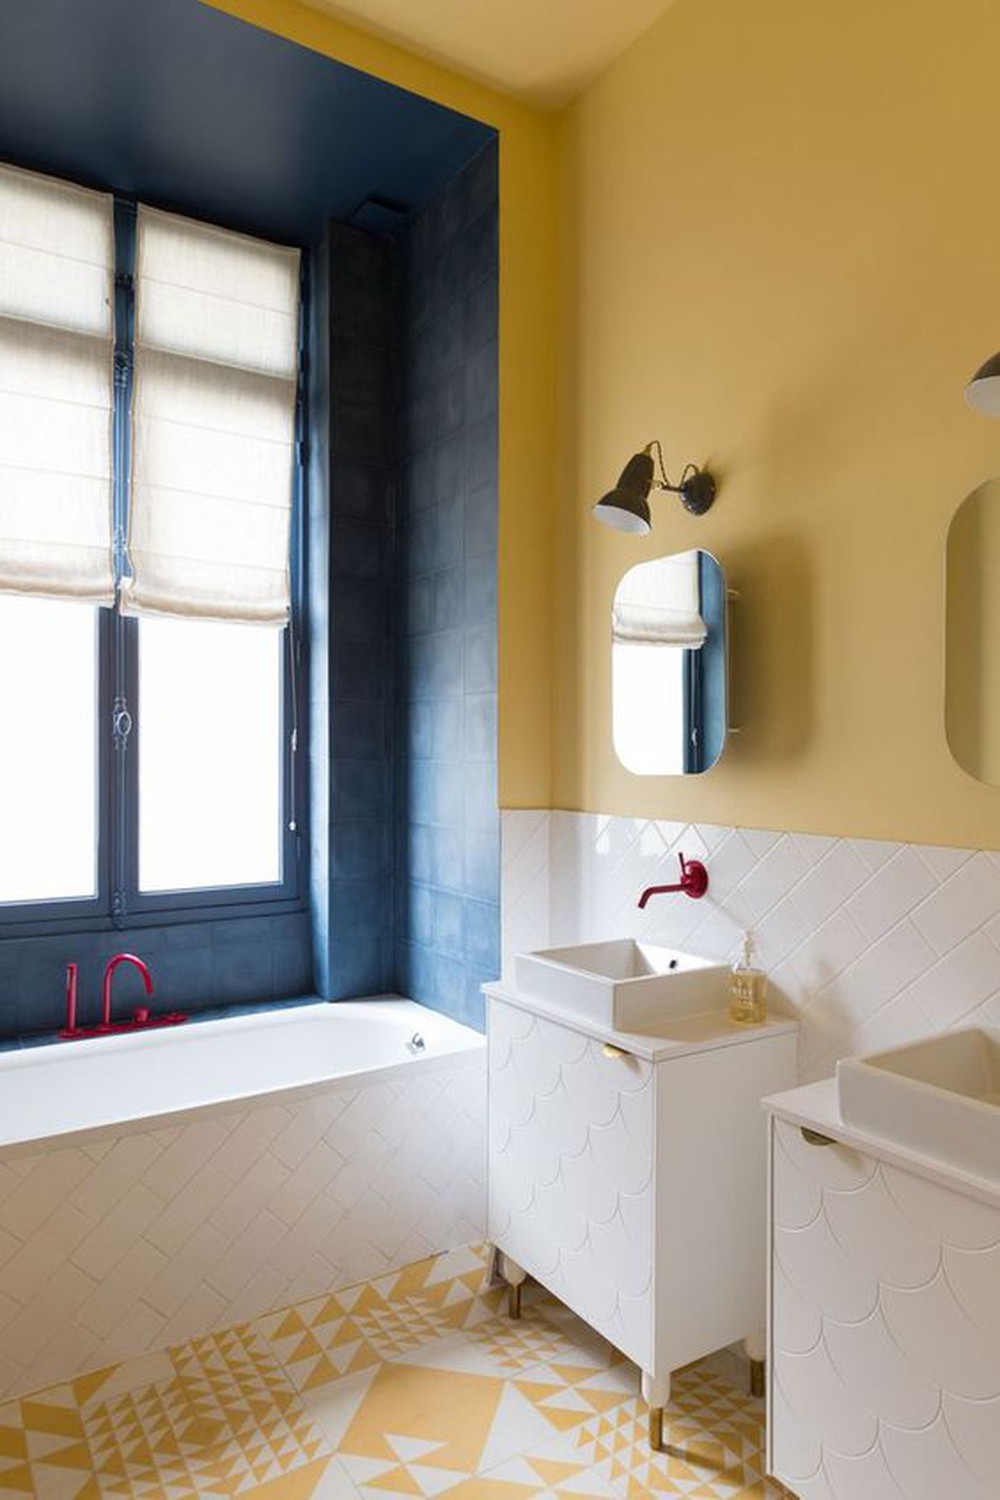 Décor do dia: banheiro amarelo com azulejos geométricos (Foto: Reprodução)